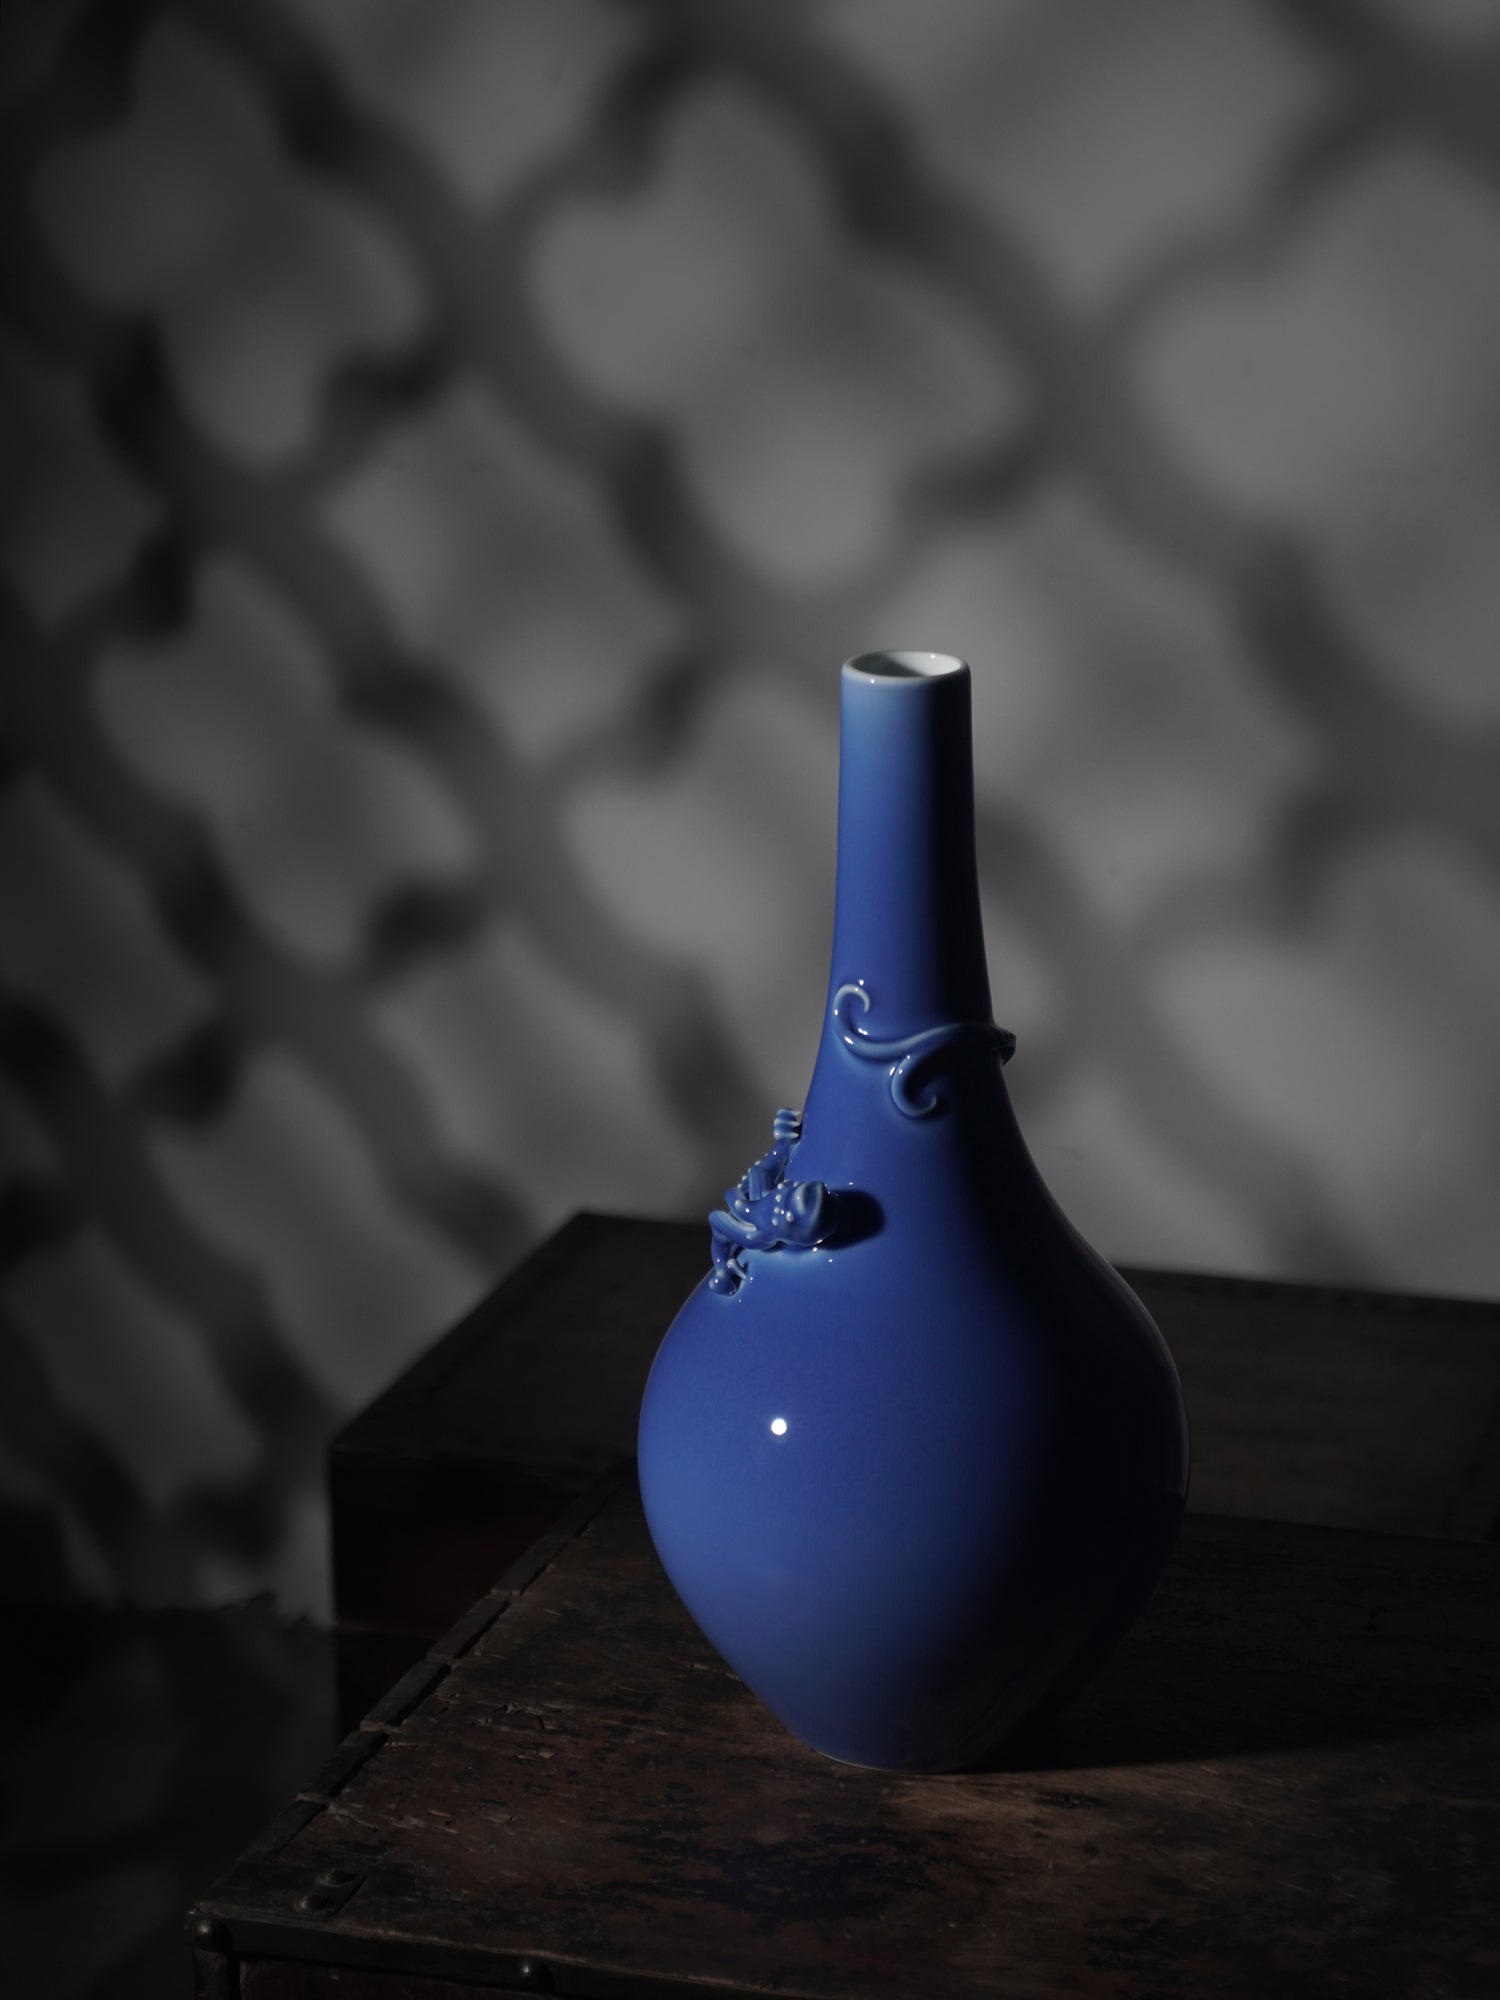 Jingde Carved Vase (Flat dragon vase) - Morrow Land